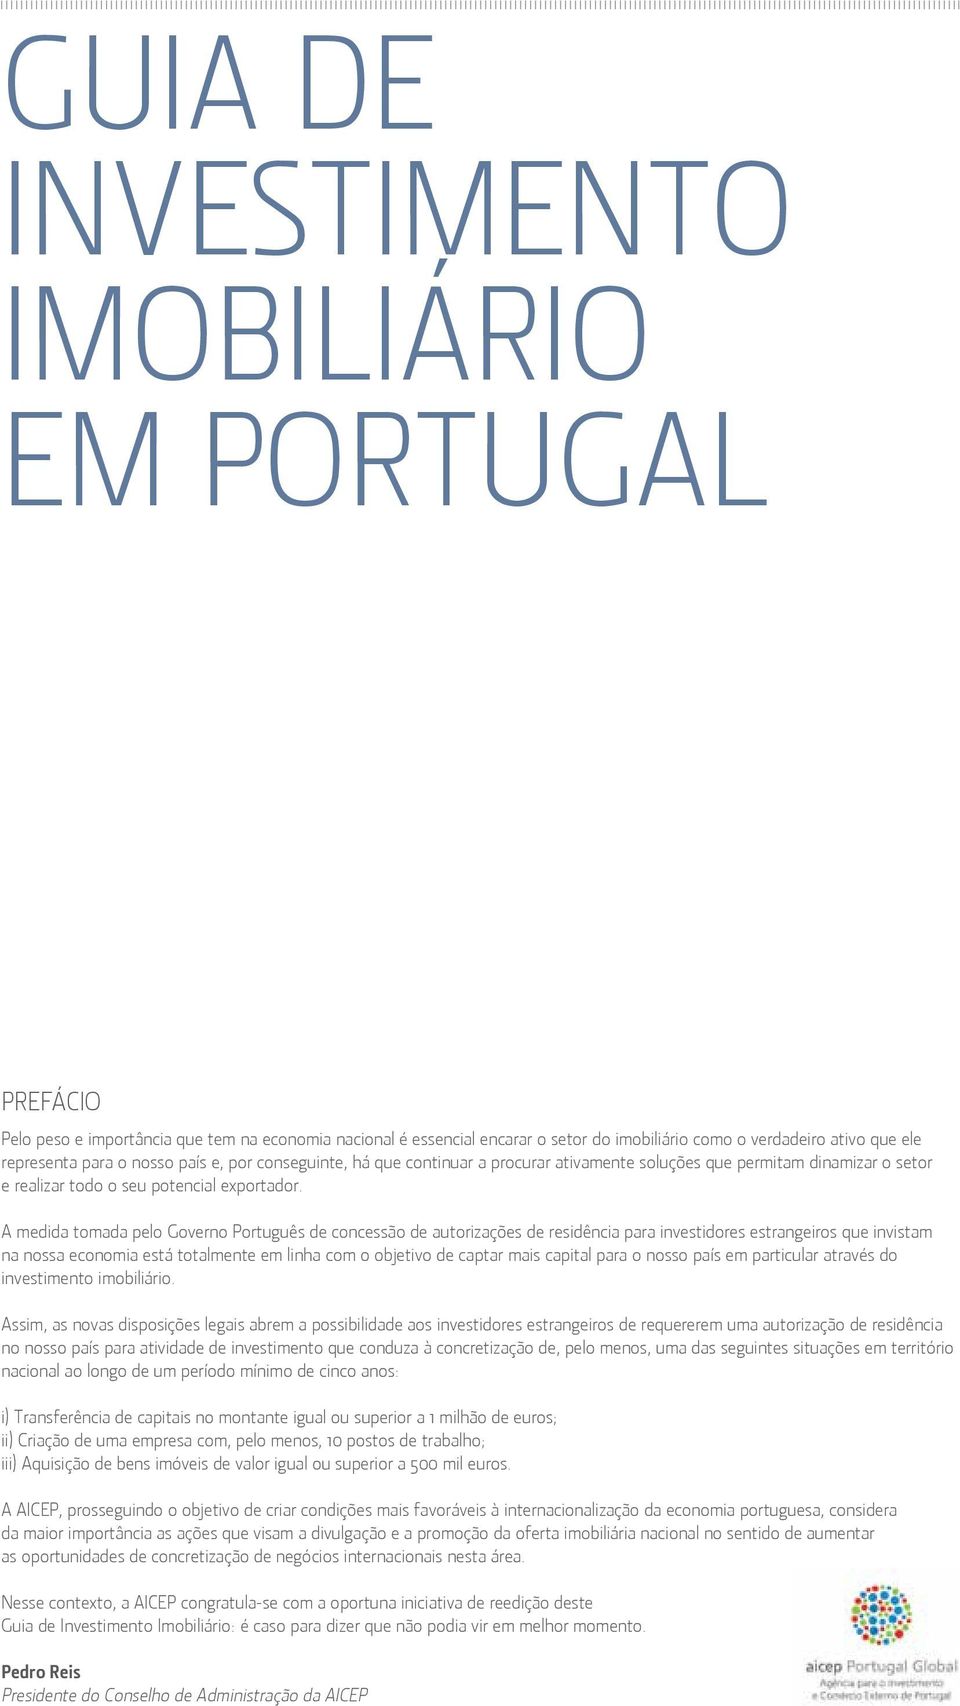 A medida tomada pelo Governo Português de concessão de autorizações de residência para investidores estrangeiros que invistam na nossa economia está totalmente em linha com o objetivo de captar mais